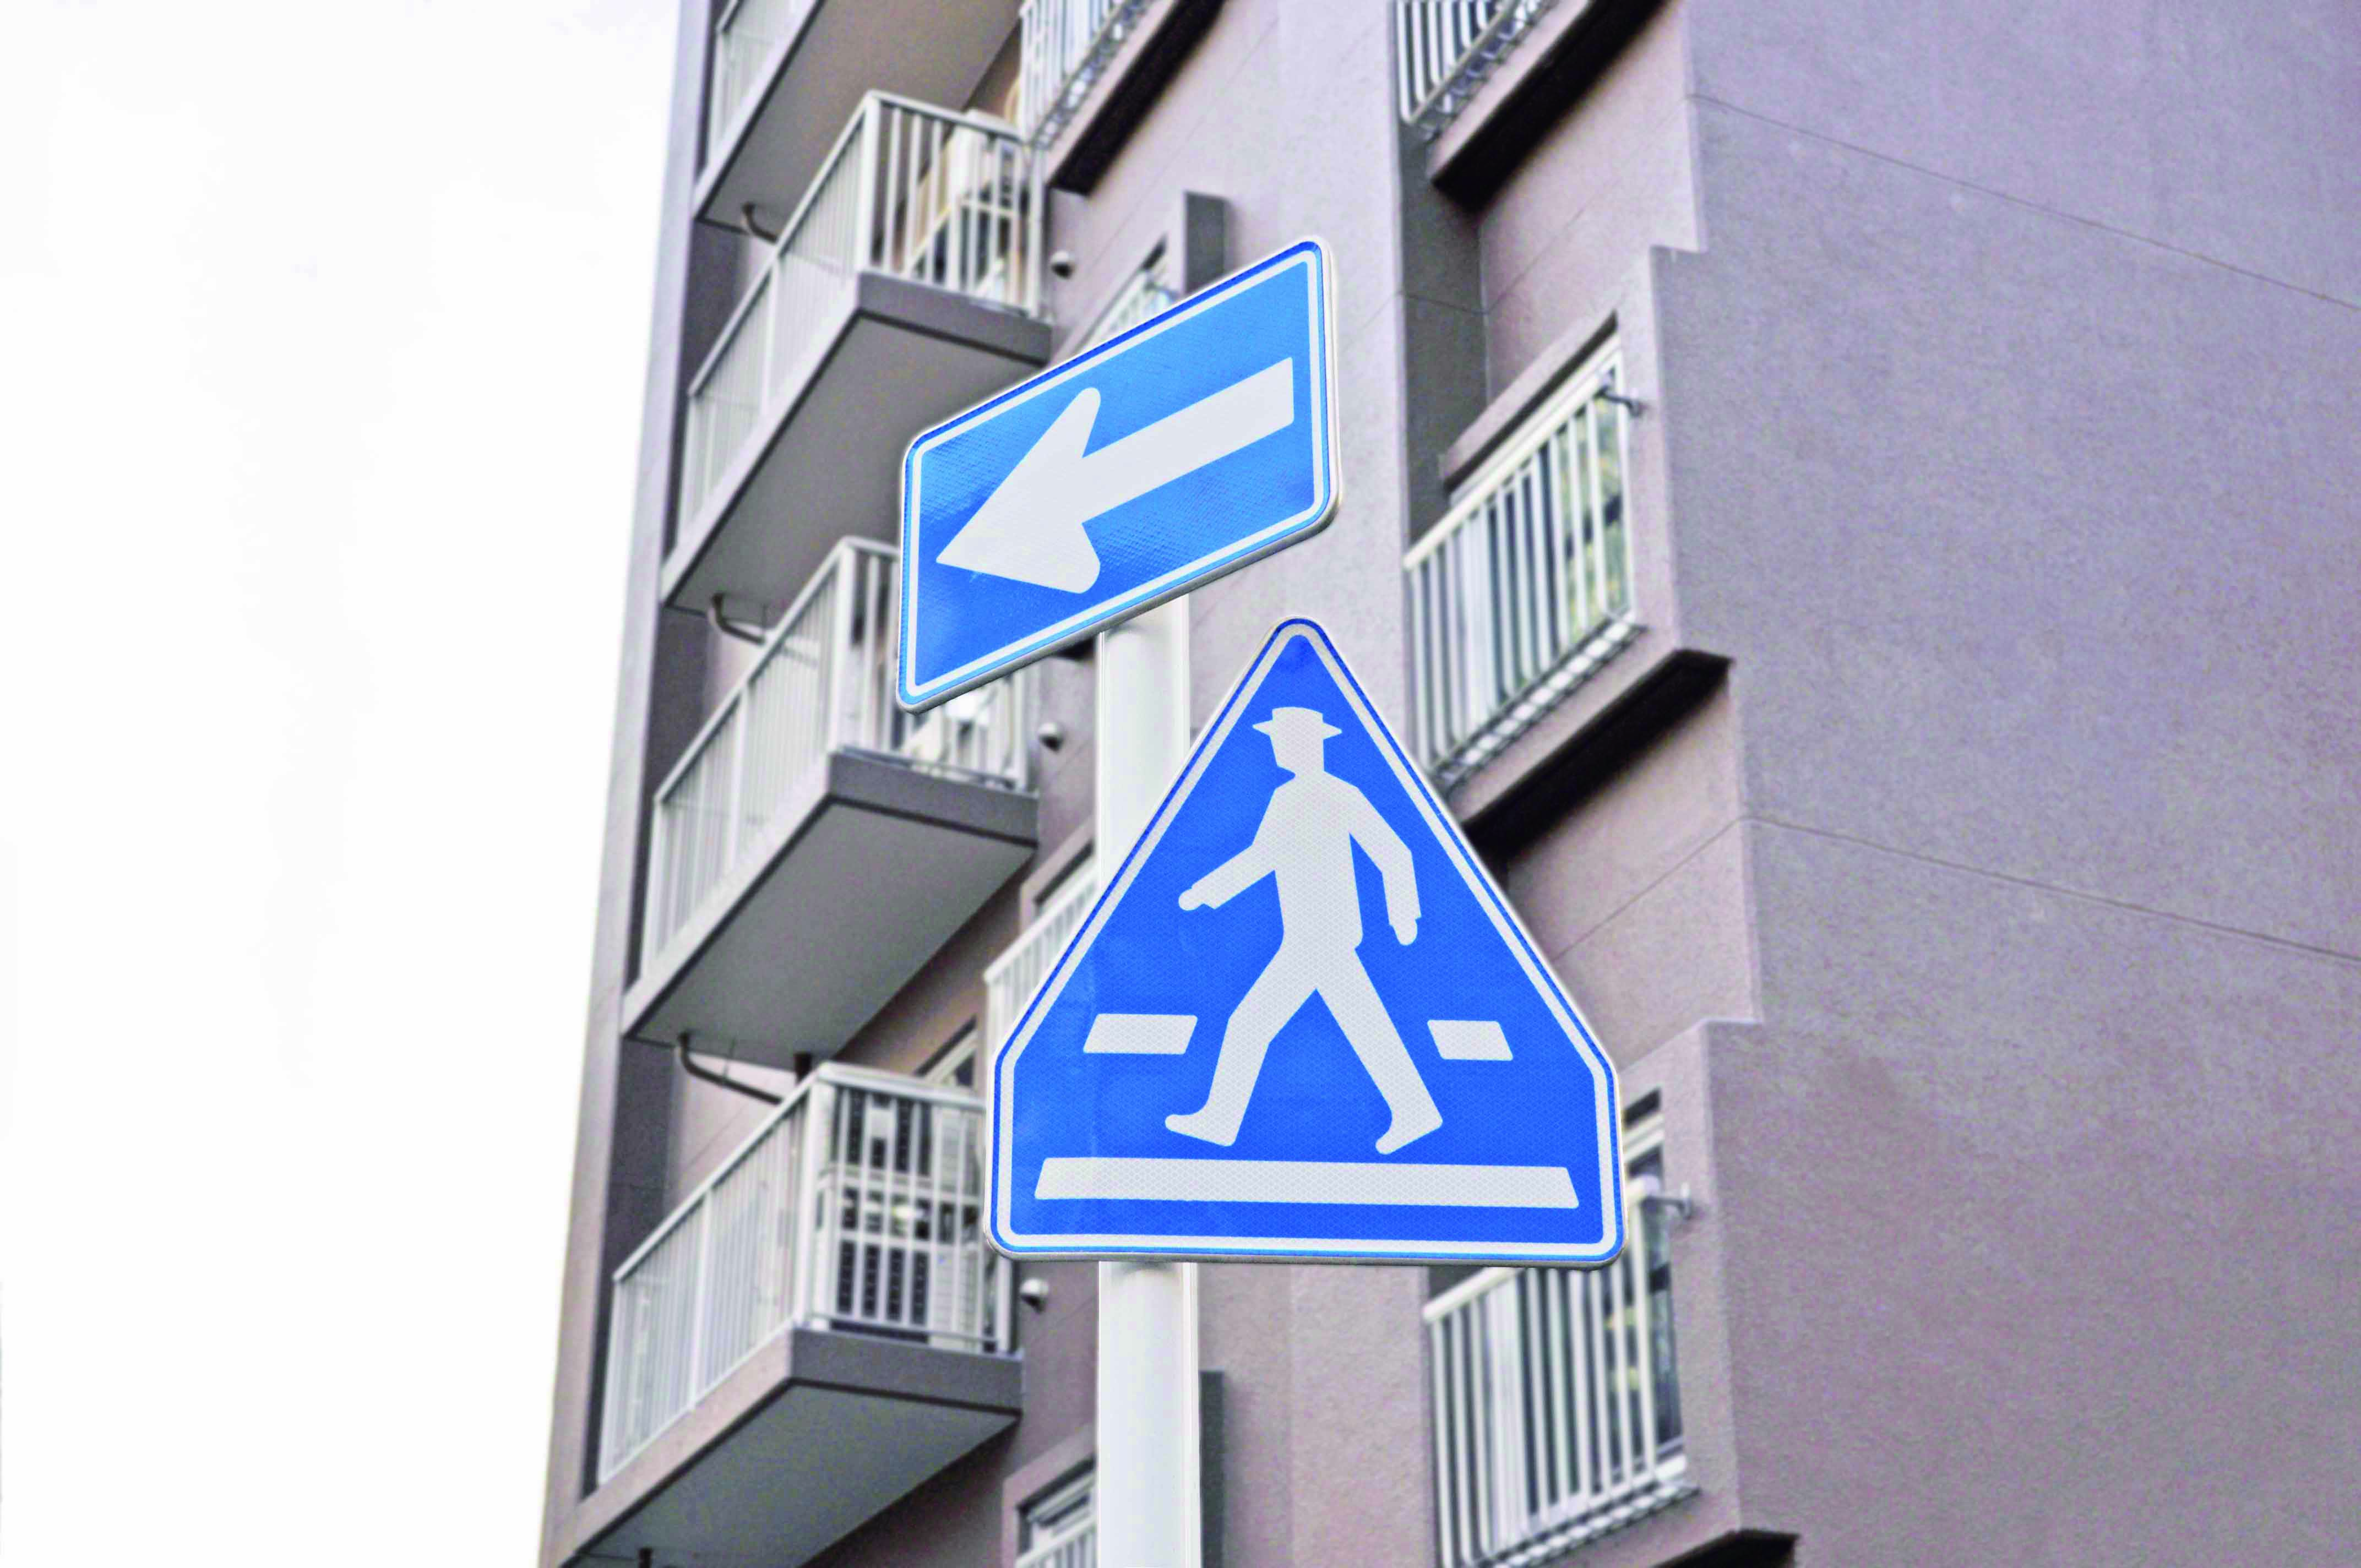 交通上の規制・指示を示す標識
